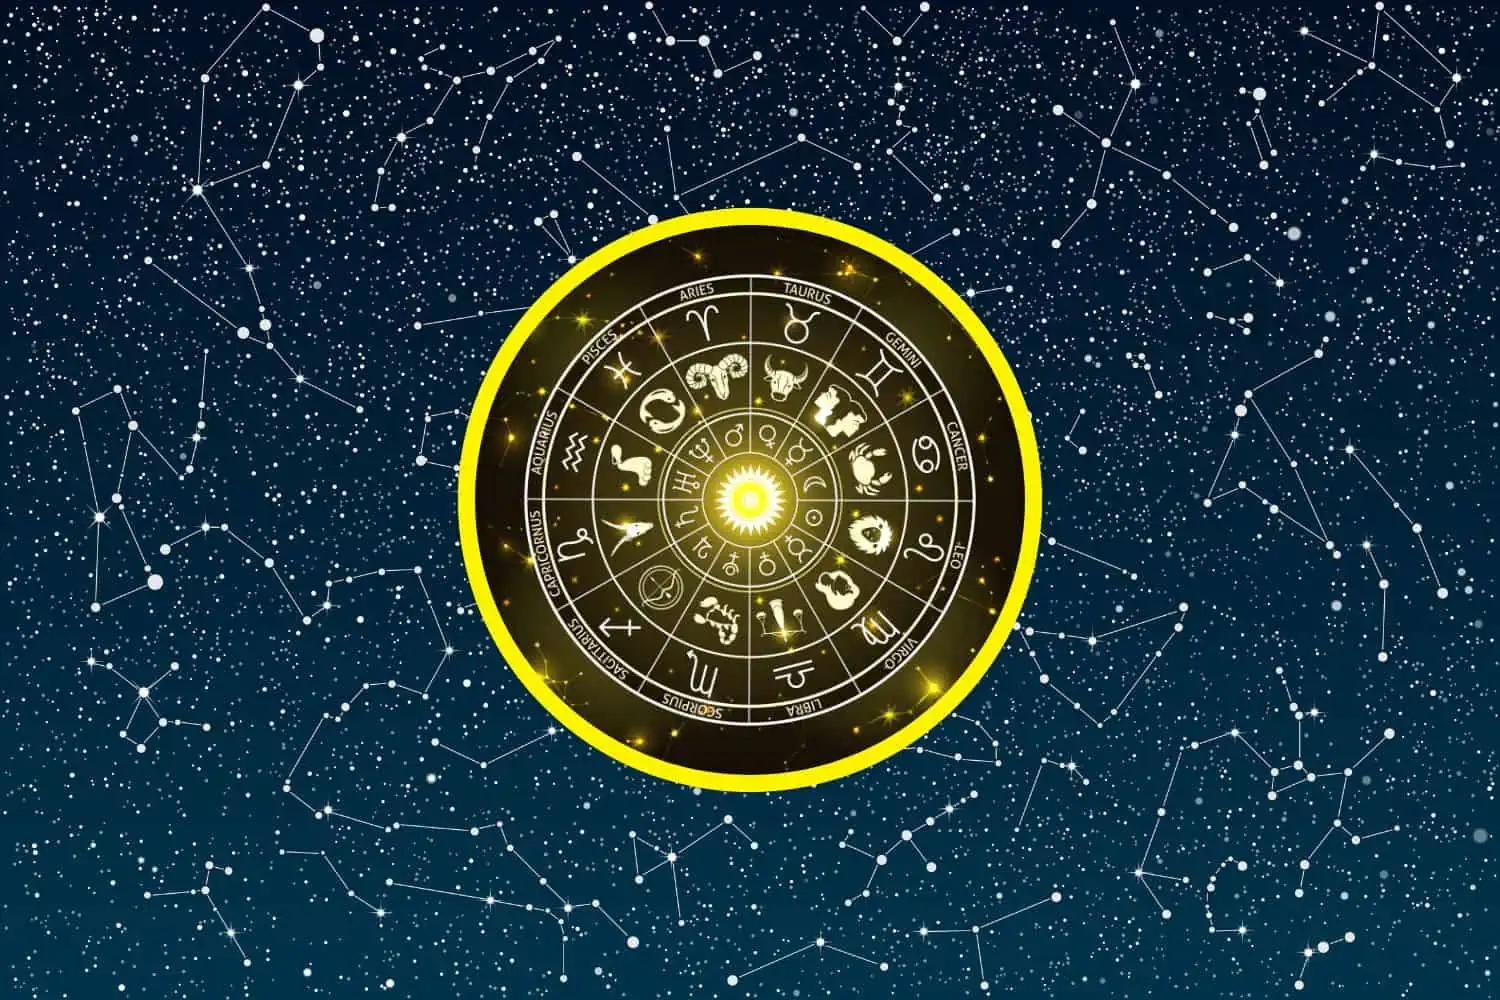 Today’s Free Horoscopes Tuesday 17 January 2023